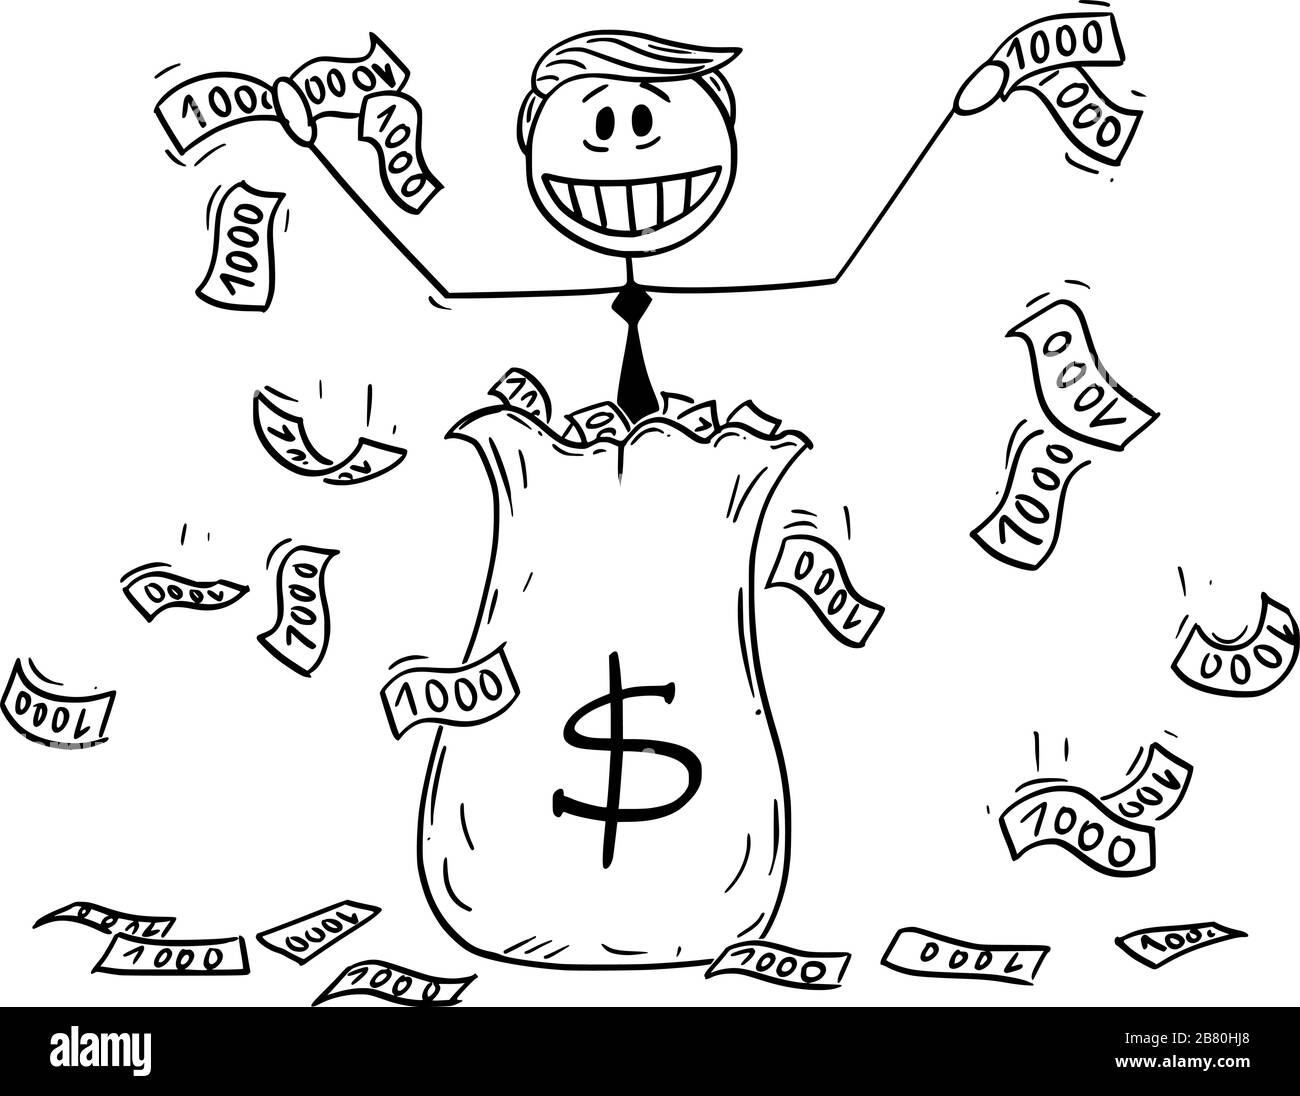 Illustrazione vettoriale del presidente americano Donald Trump che ha buttato via denaro, utilizzando denaro in elicottero o quantitative easing durante la recessione.Marzo 19,2020. Illustrazione Vettoriale